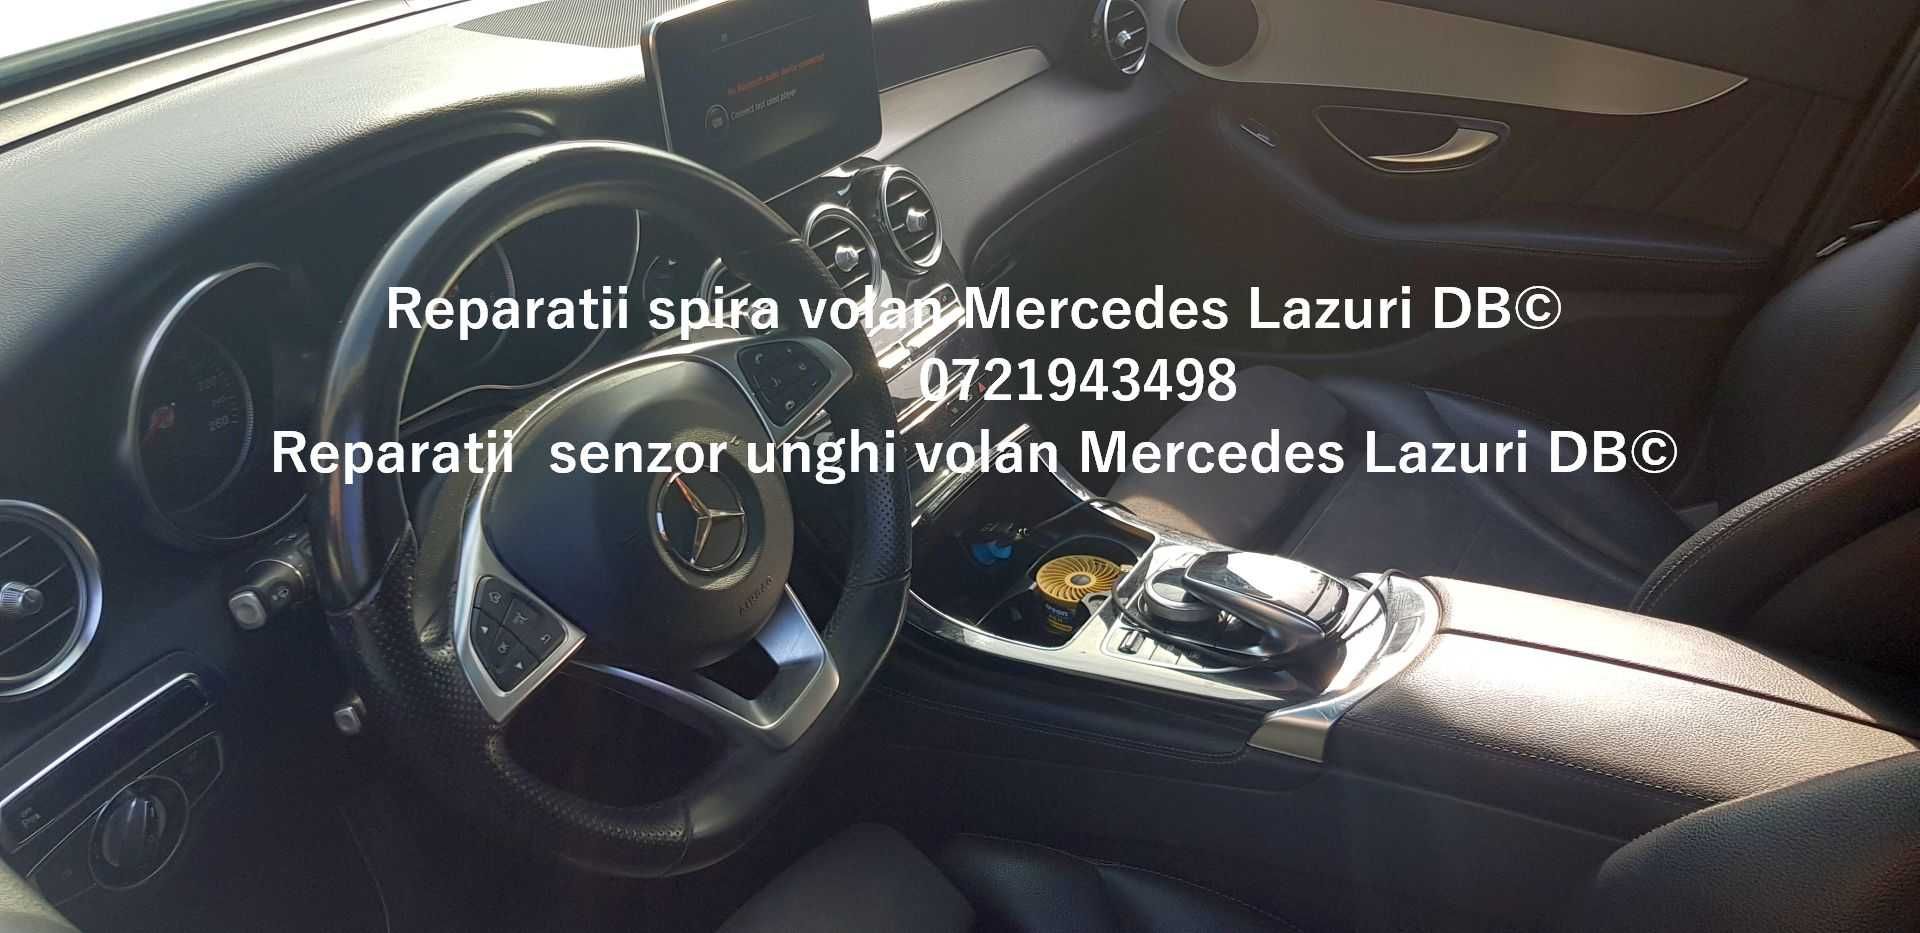 Spira volan Mercedes GLA senzor unghi volan Gla